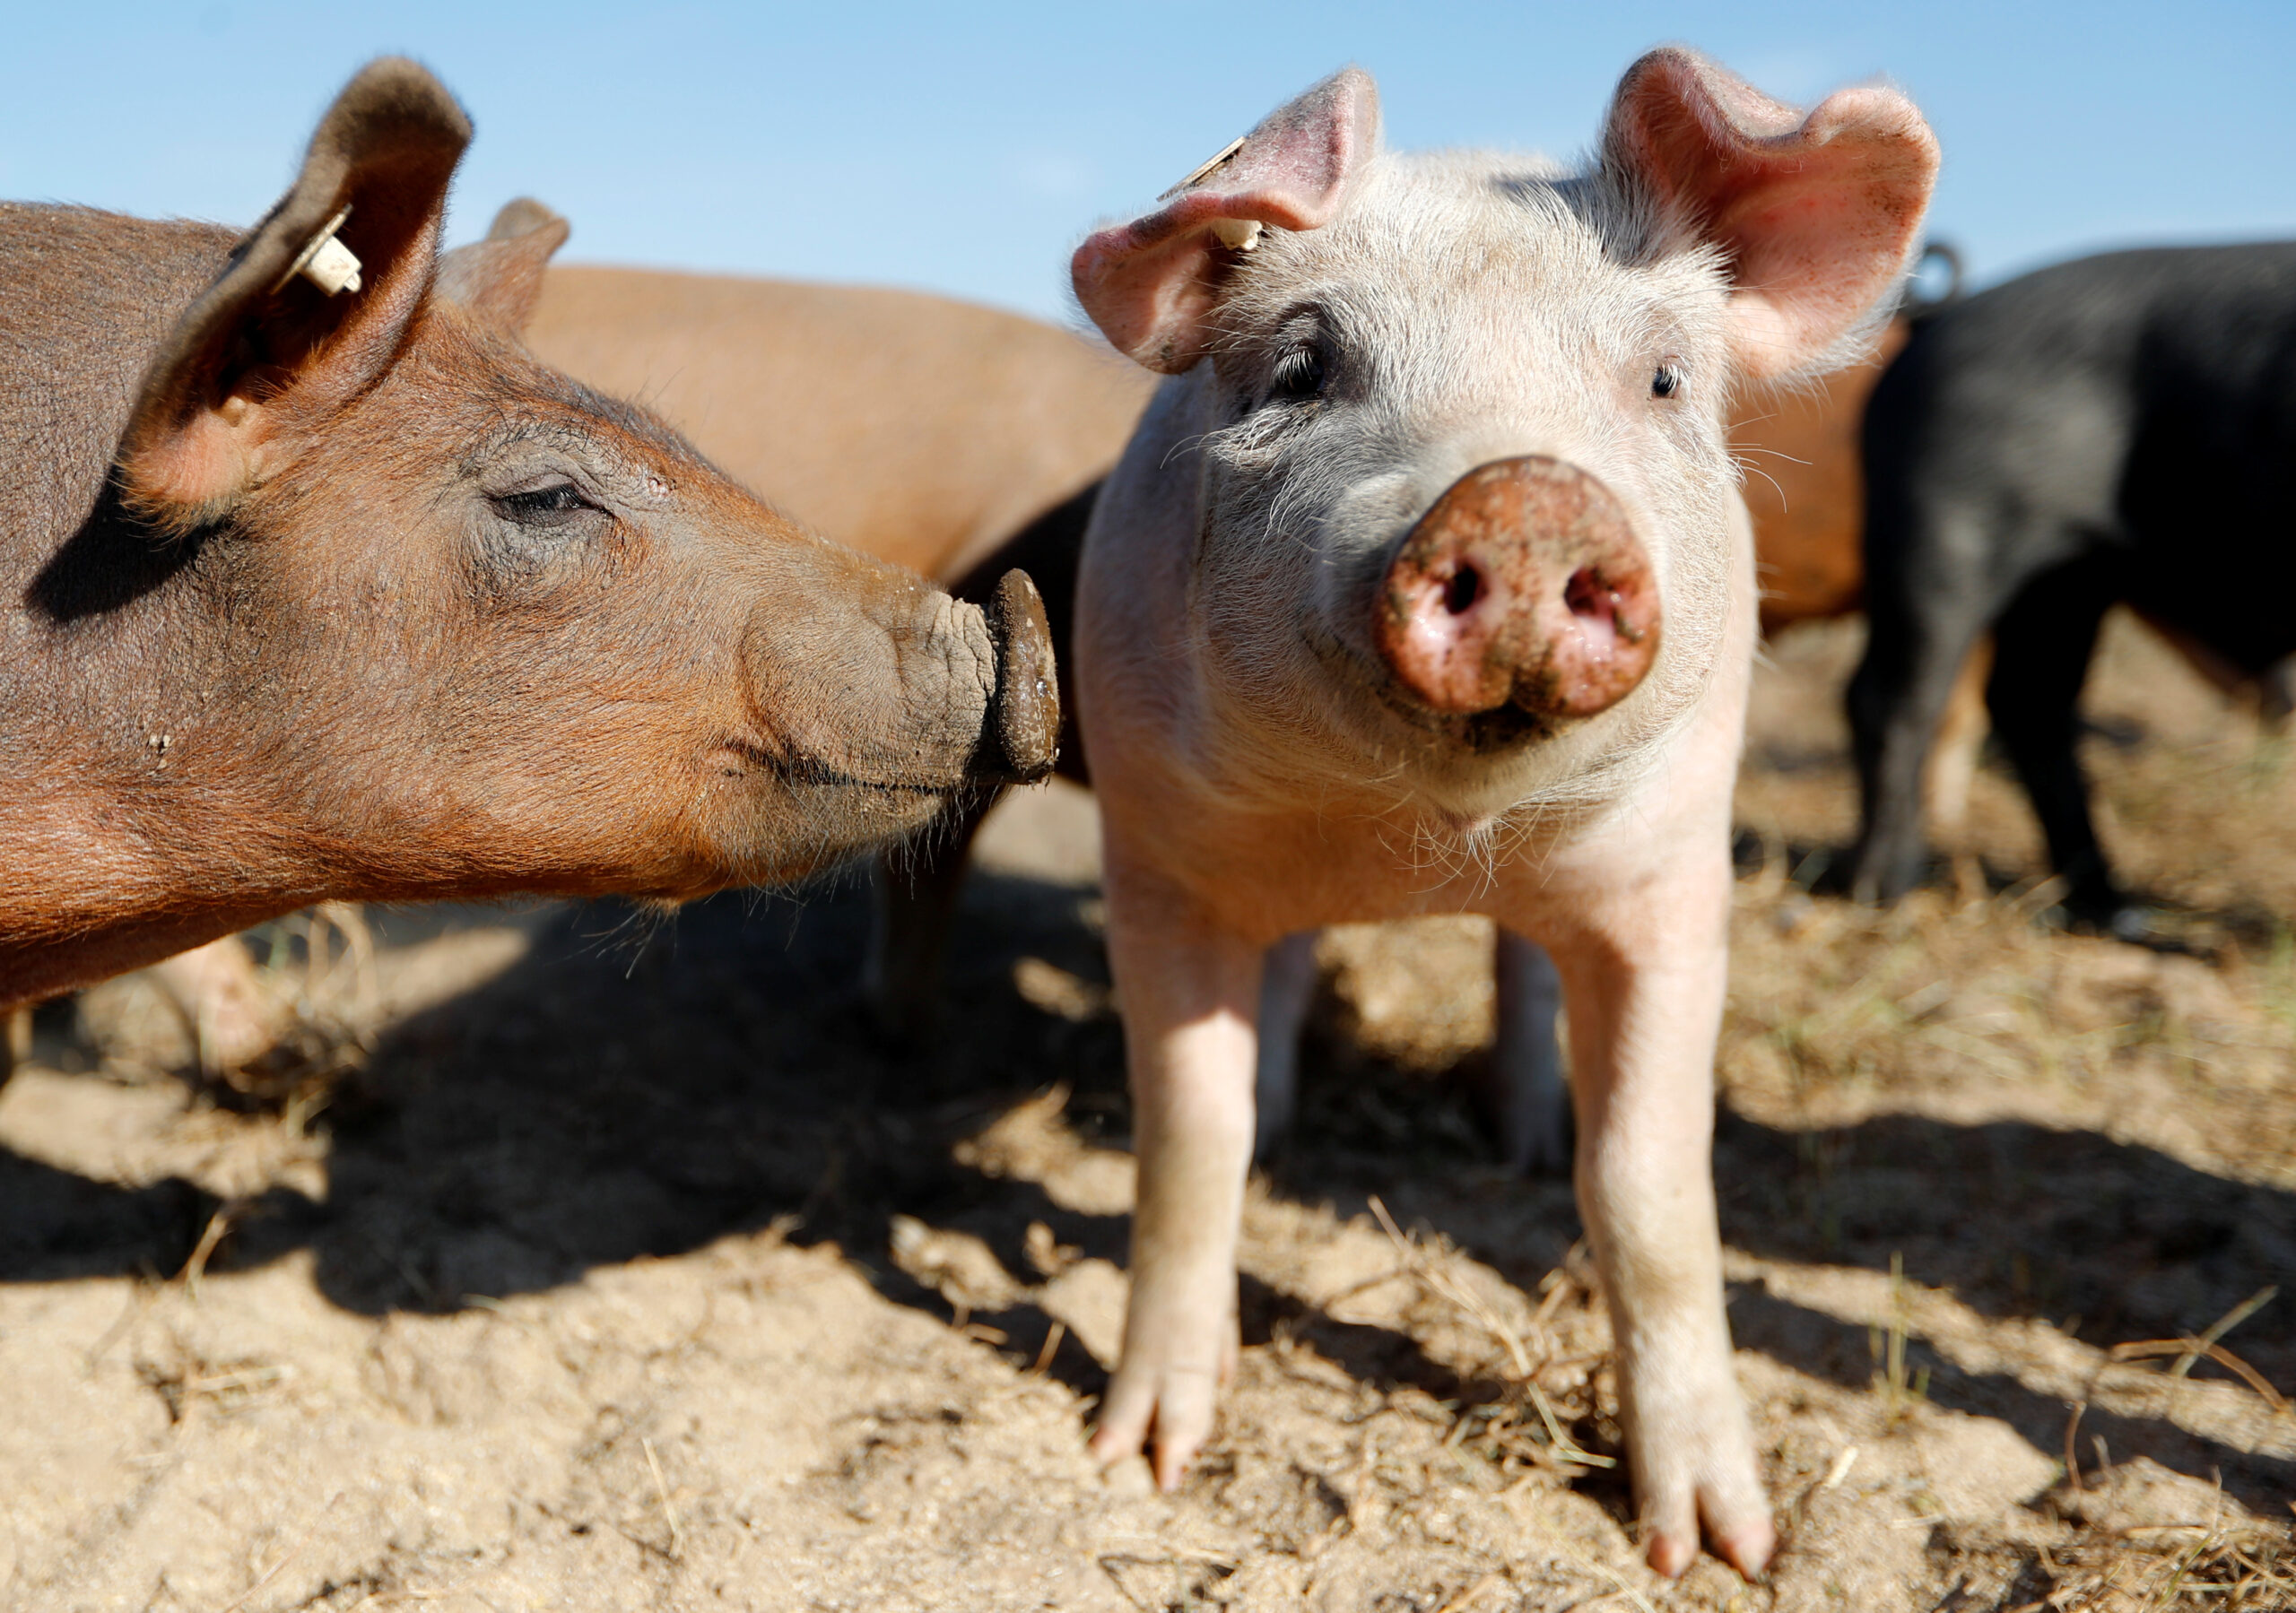 FOTO DE ARCHIVO. Imagen referencial de cerdos en una granja orgánica al aire libre, en Bad Belzig, al sur de Berlín, Alemania. 14 de julio de 2020. REUTERS/Fabrizio Bensch